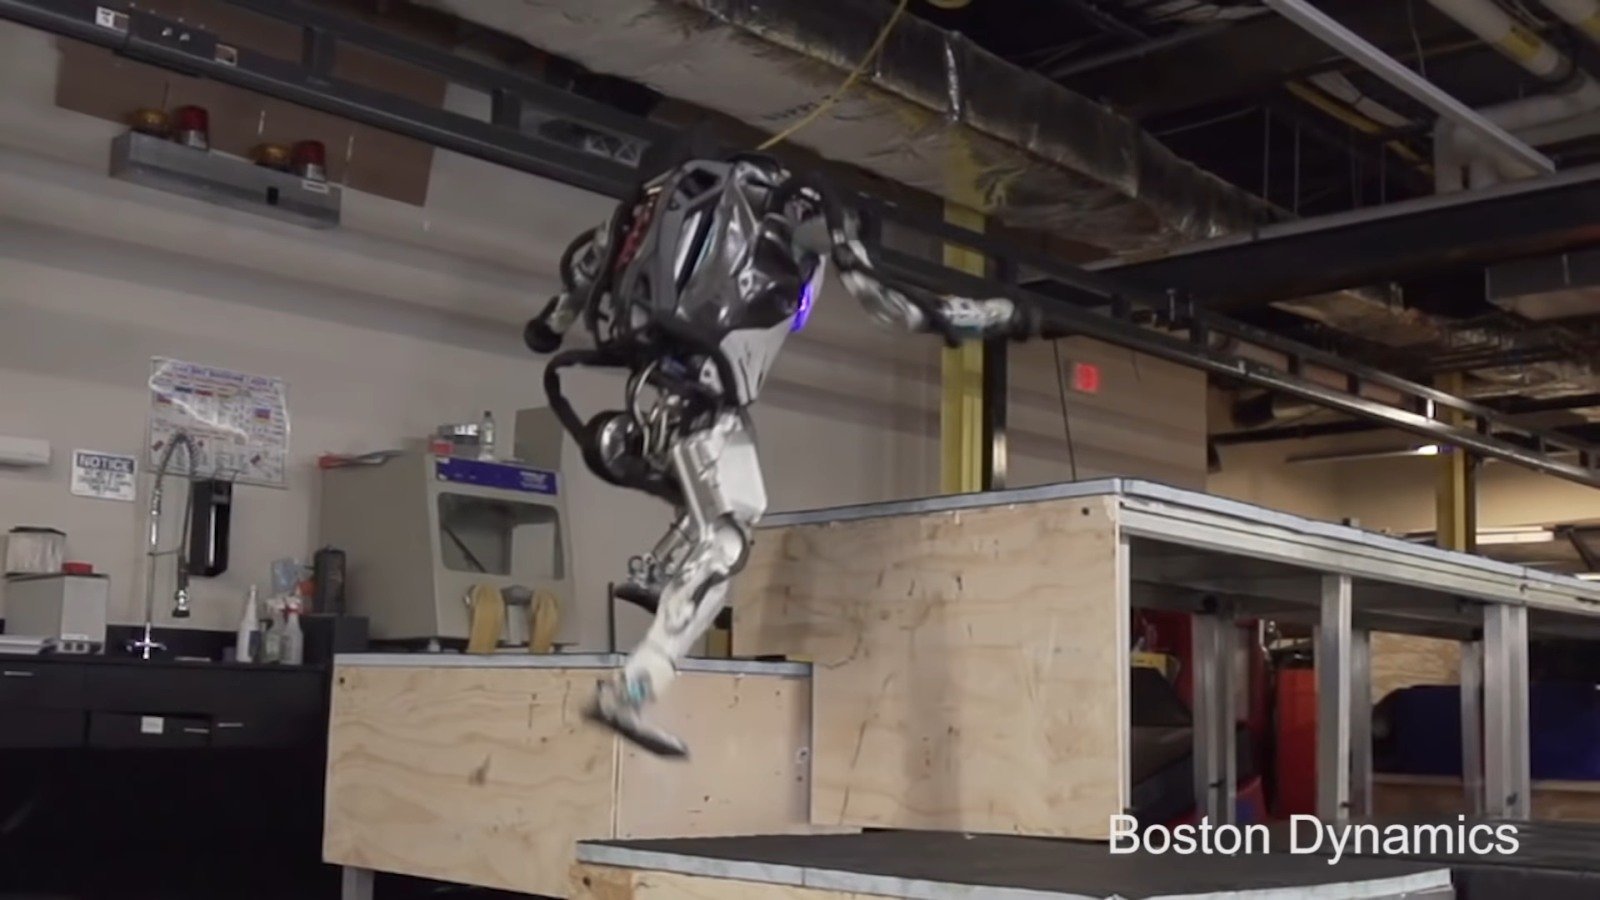 #वीडियो | कंपनी बोस्टन डायनेमिक्स को प्रशिक्षित किया है, अपने रोबोट 